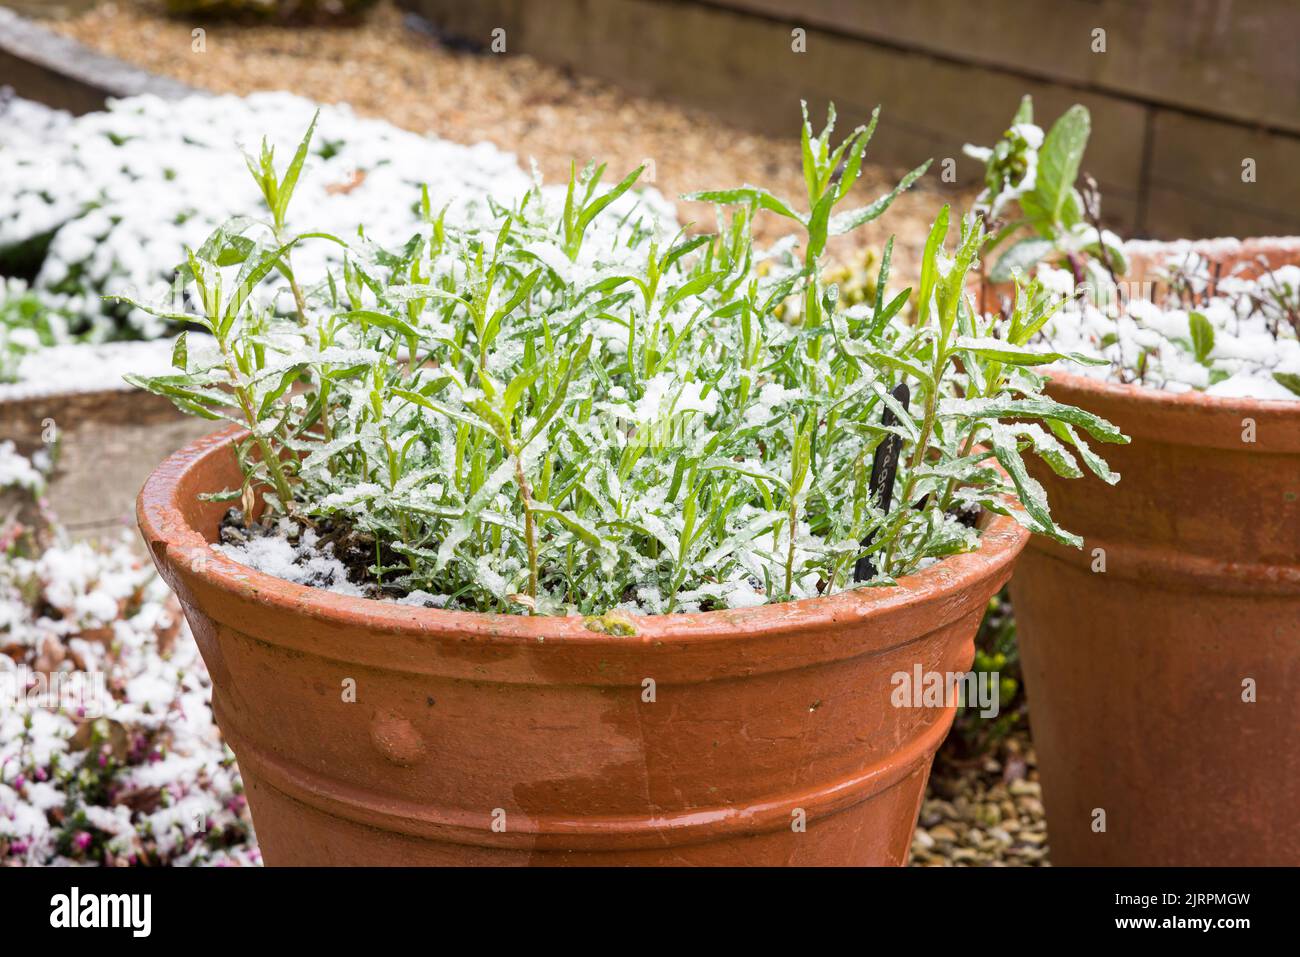 Französische Estragon (Artemisia dracunculus)-Pflanze in einer Terrakotta-Pflanze im späten Winter oder frühen Frühjahr, bedeckt mit Schnee in einem britischen Garten Stockfoto